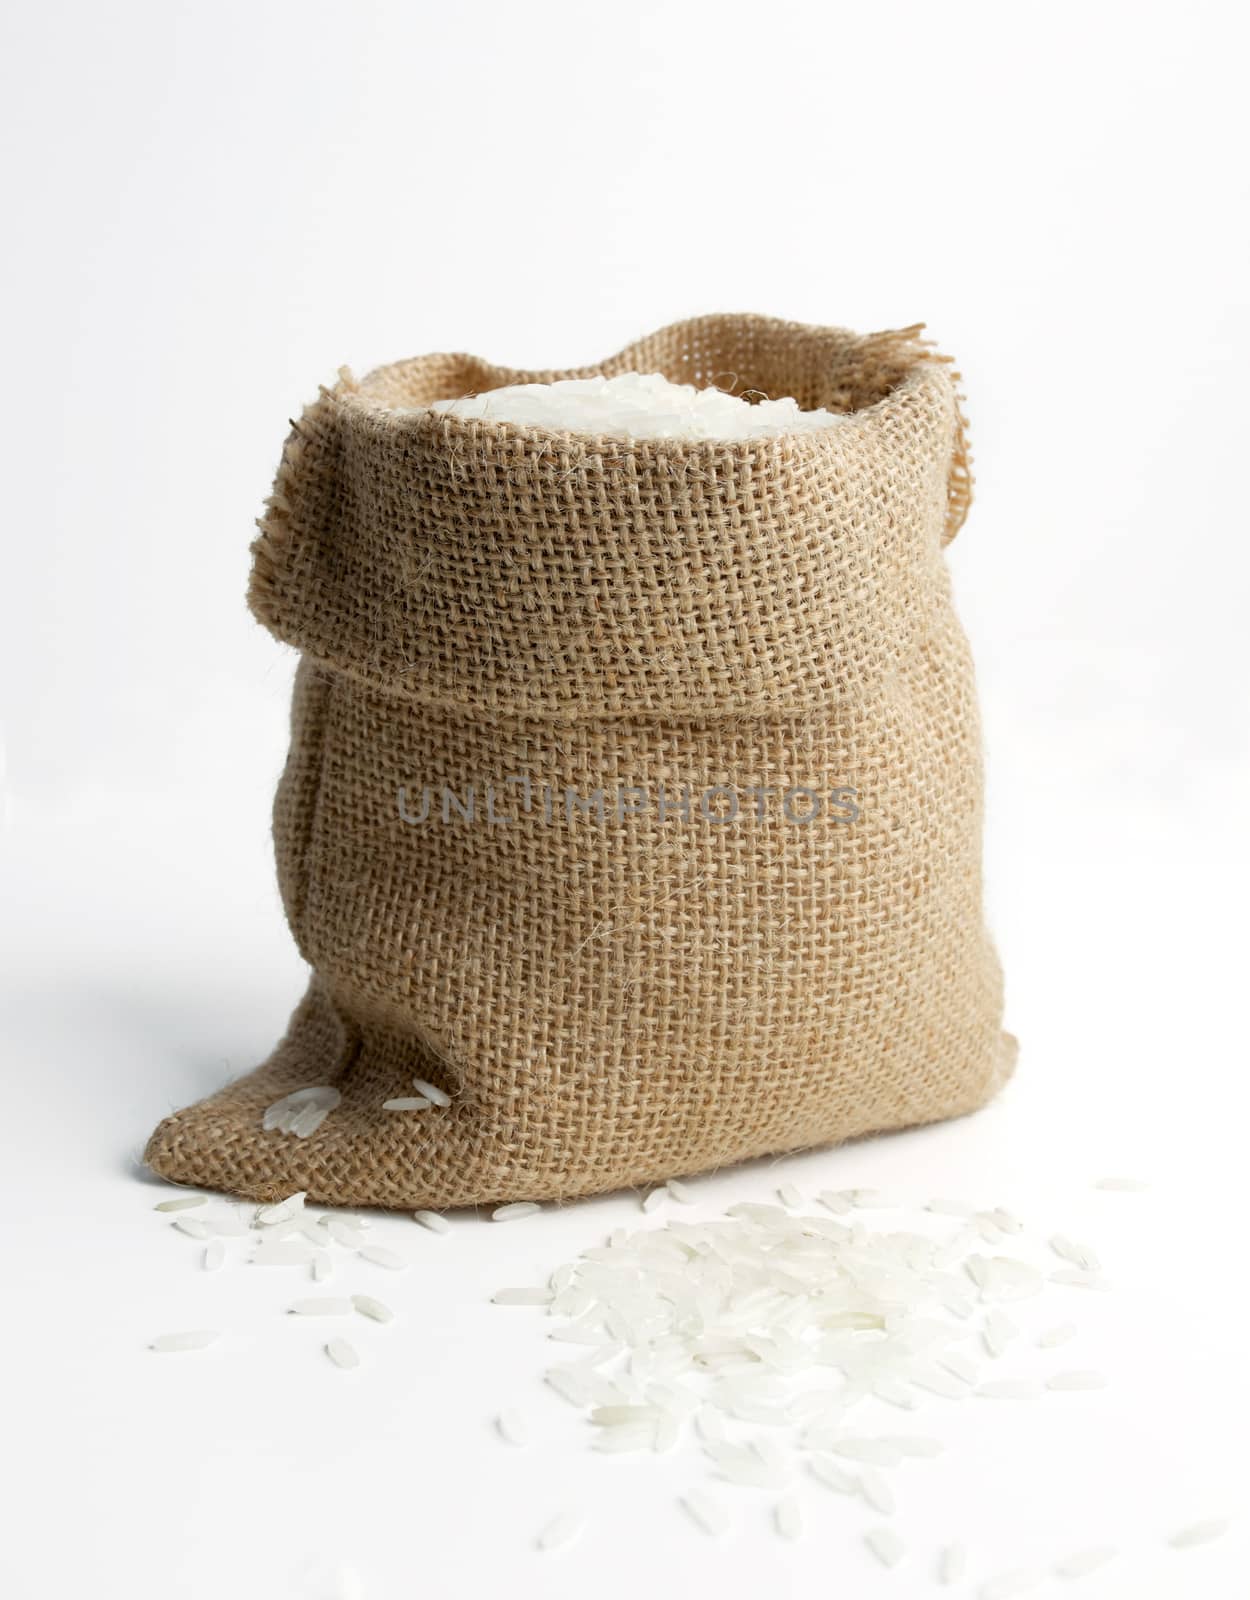 rice in burlap sack by antpkr